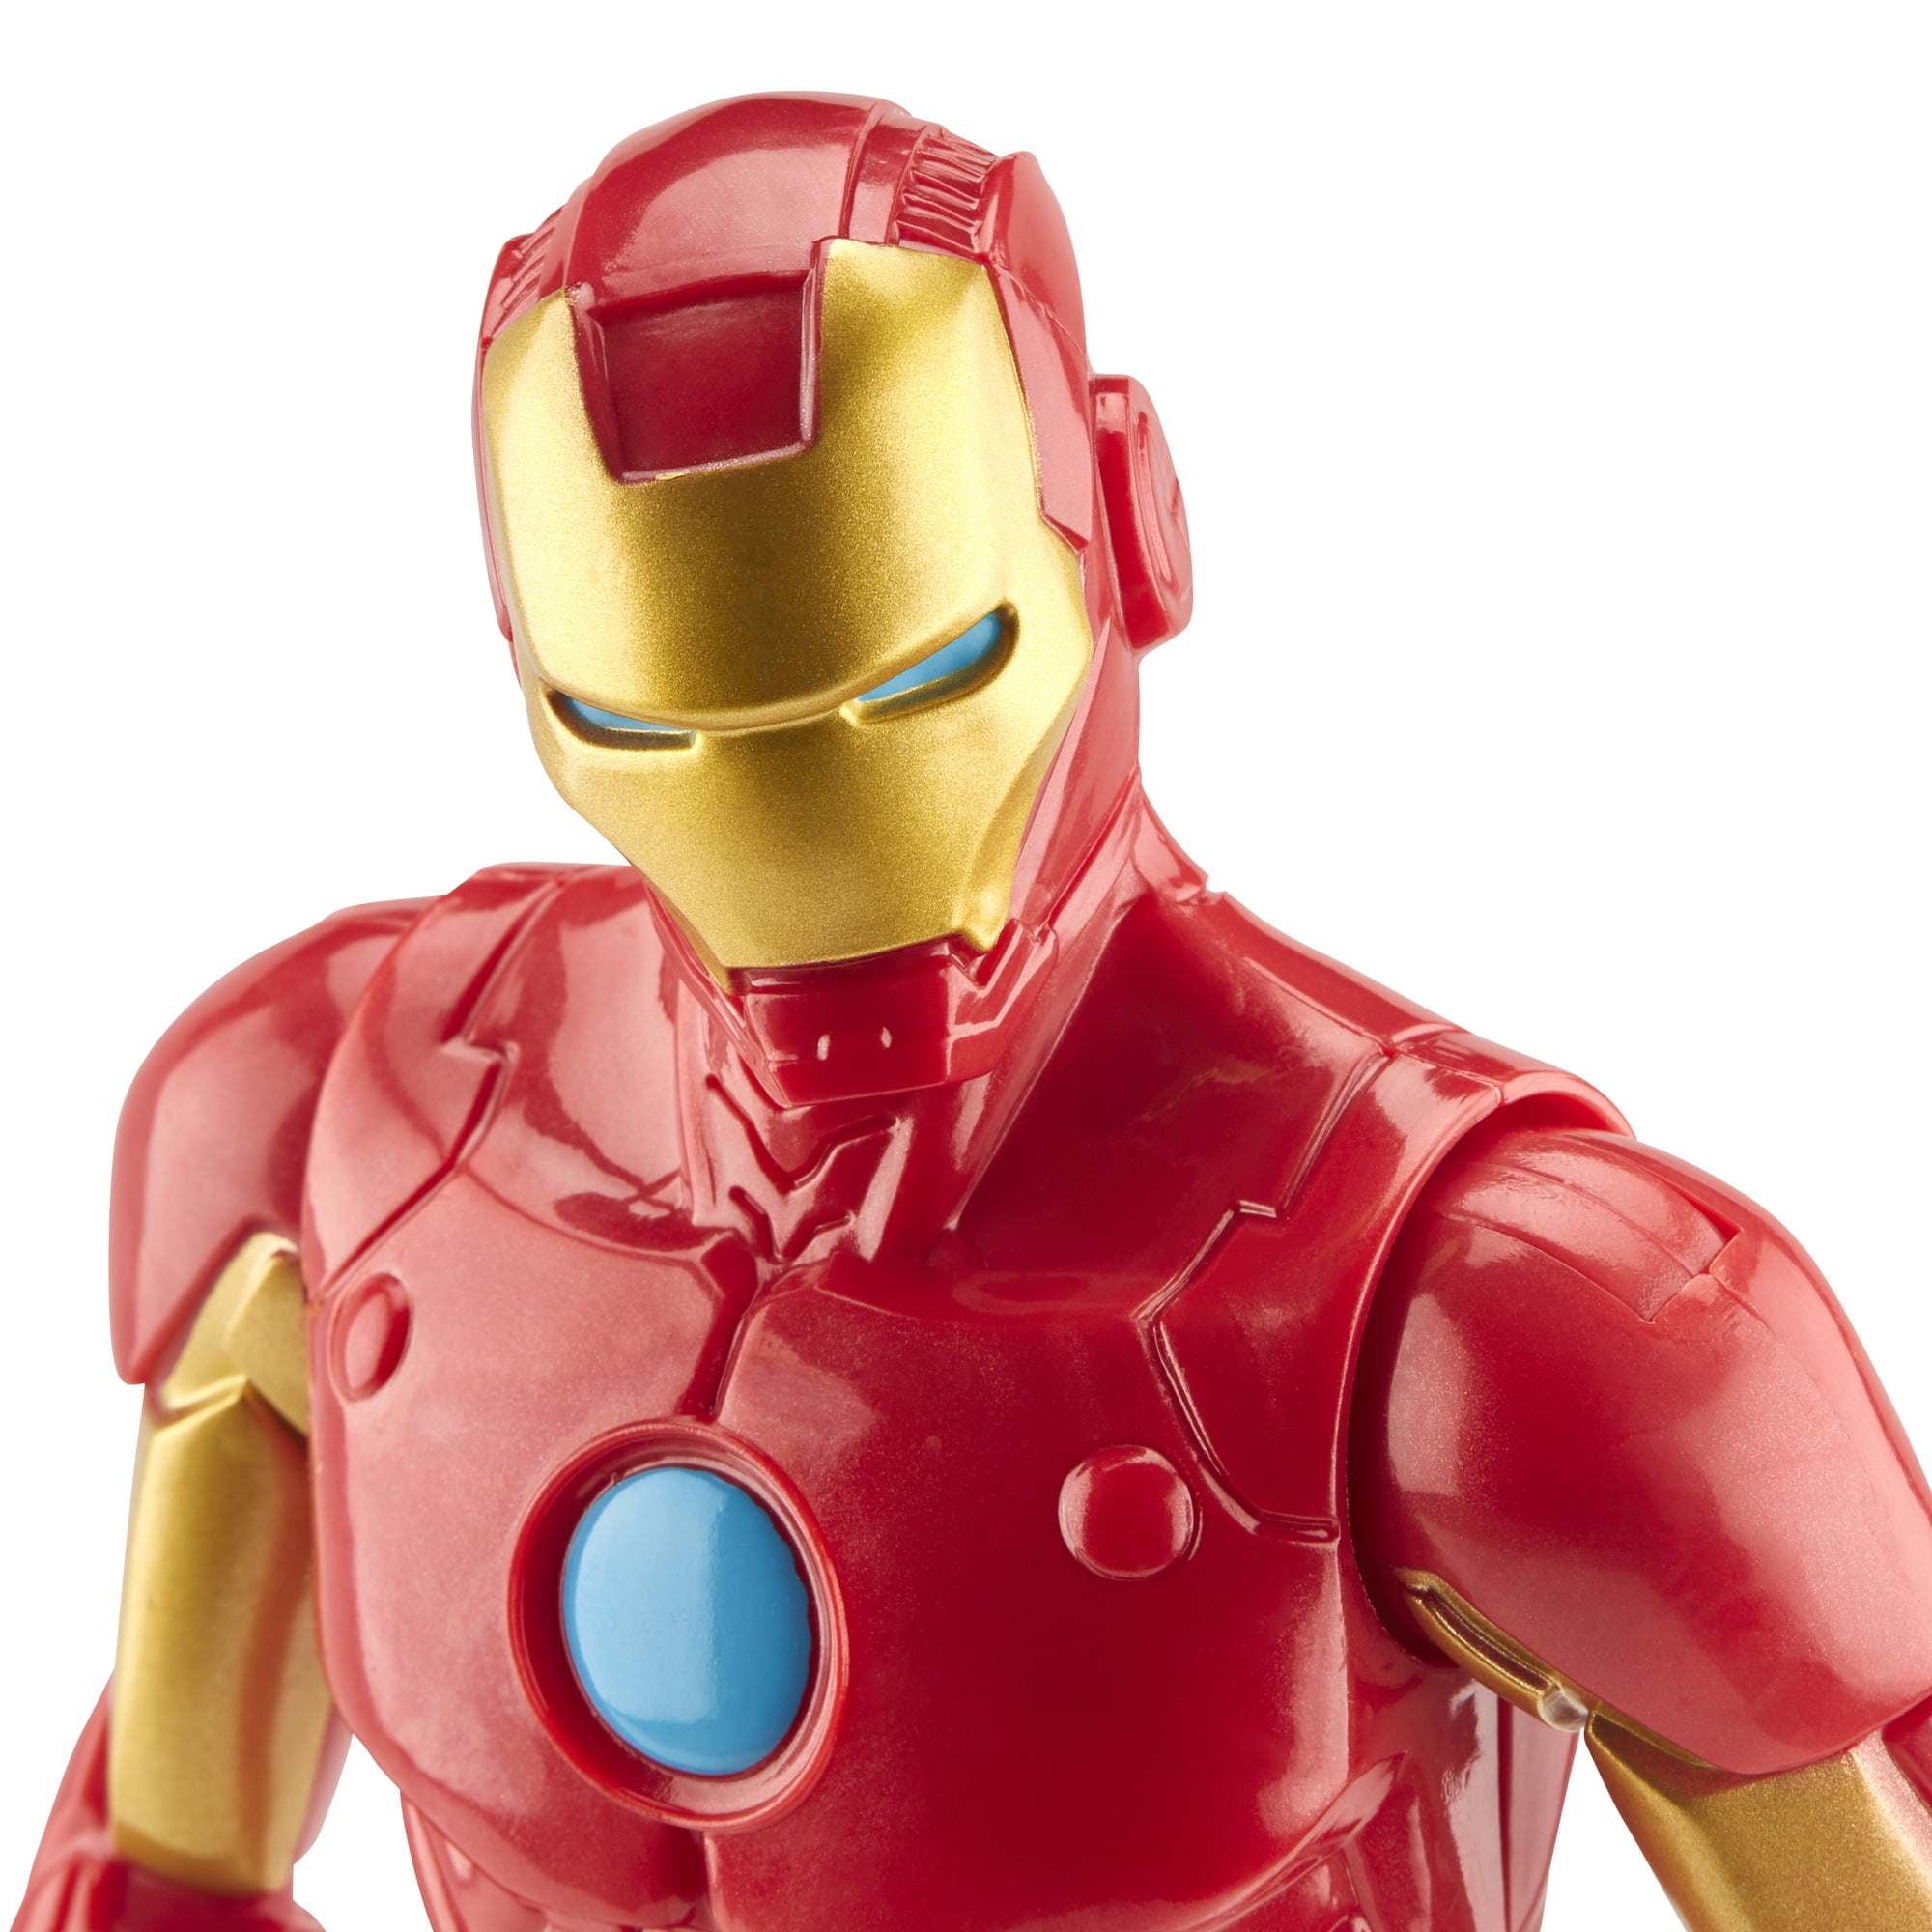 Marvel Avengers TITAN HERO Blast Gear Iron Man Action Figure E7380 